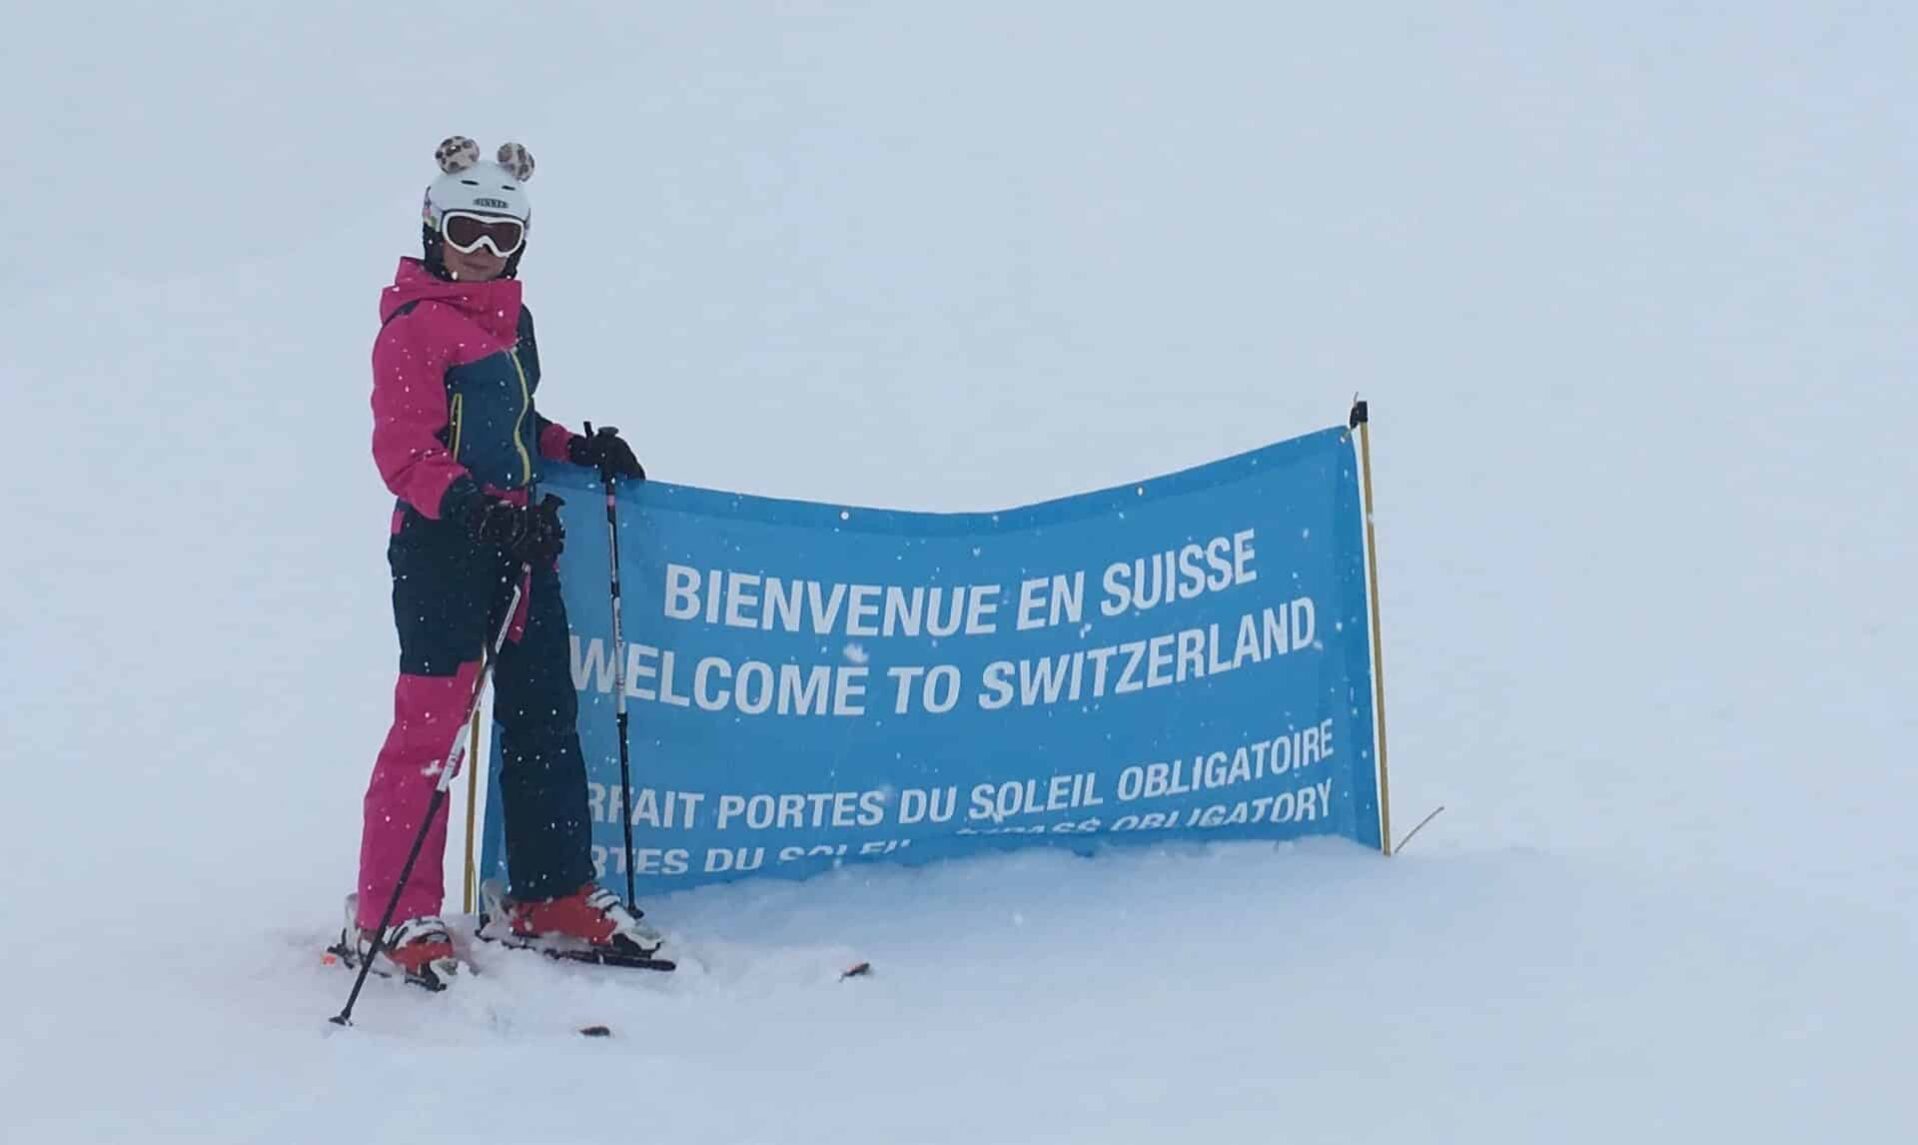 Een skiër in roze skikleding, voorzien van een skibril en helm met decoratieve oren, staat naast een blauwe banner met de tekst 'Bienvenue en Suisse - Welcome to Switzerland' in het skigebied Portes du Soleil te midden van een sneeuwstorm